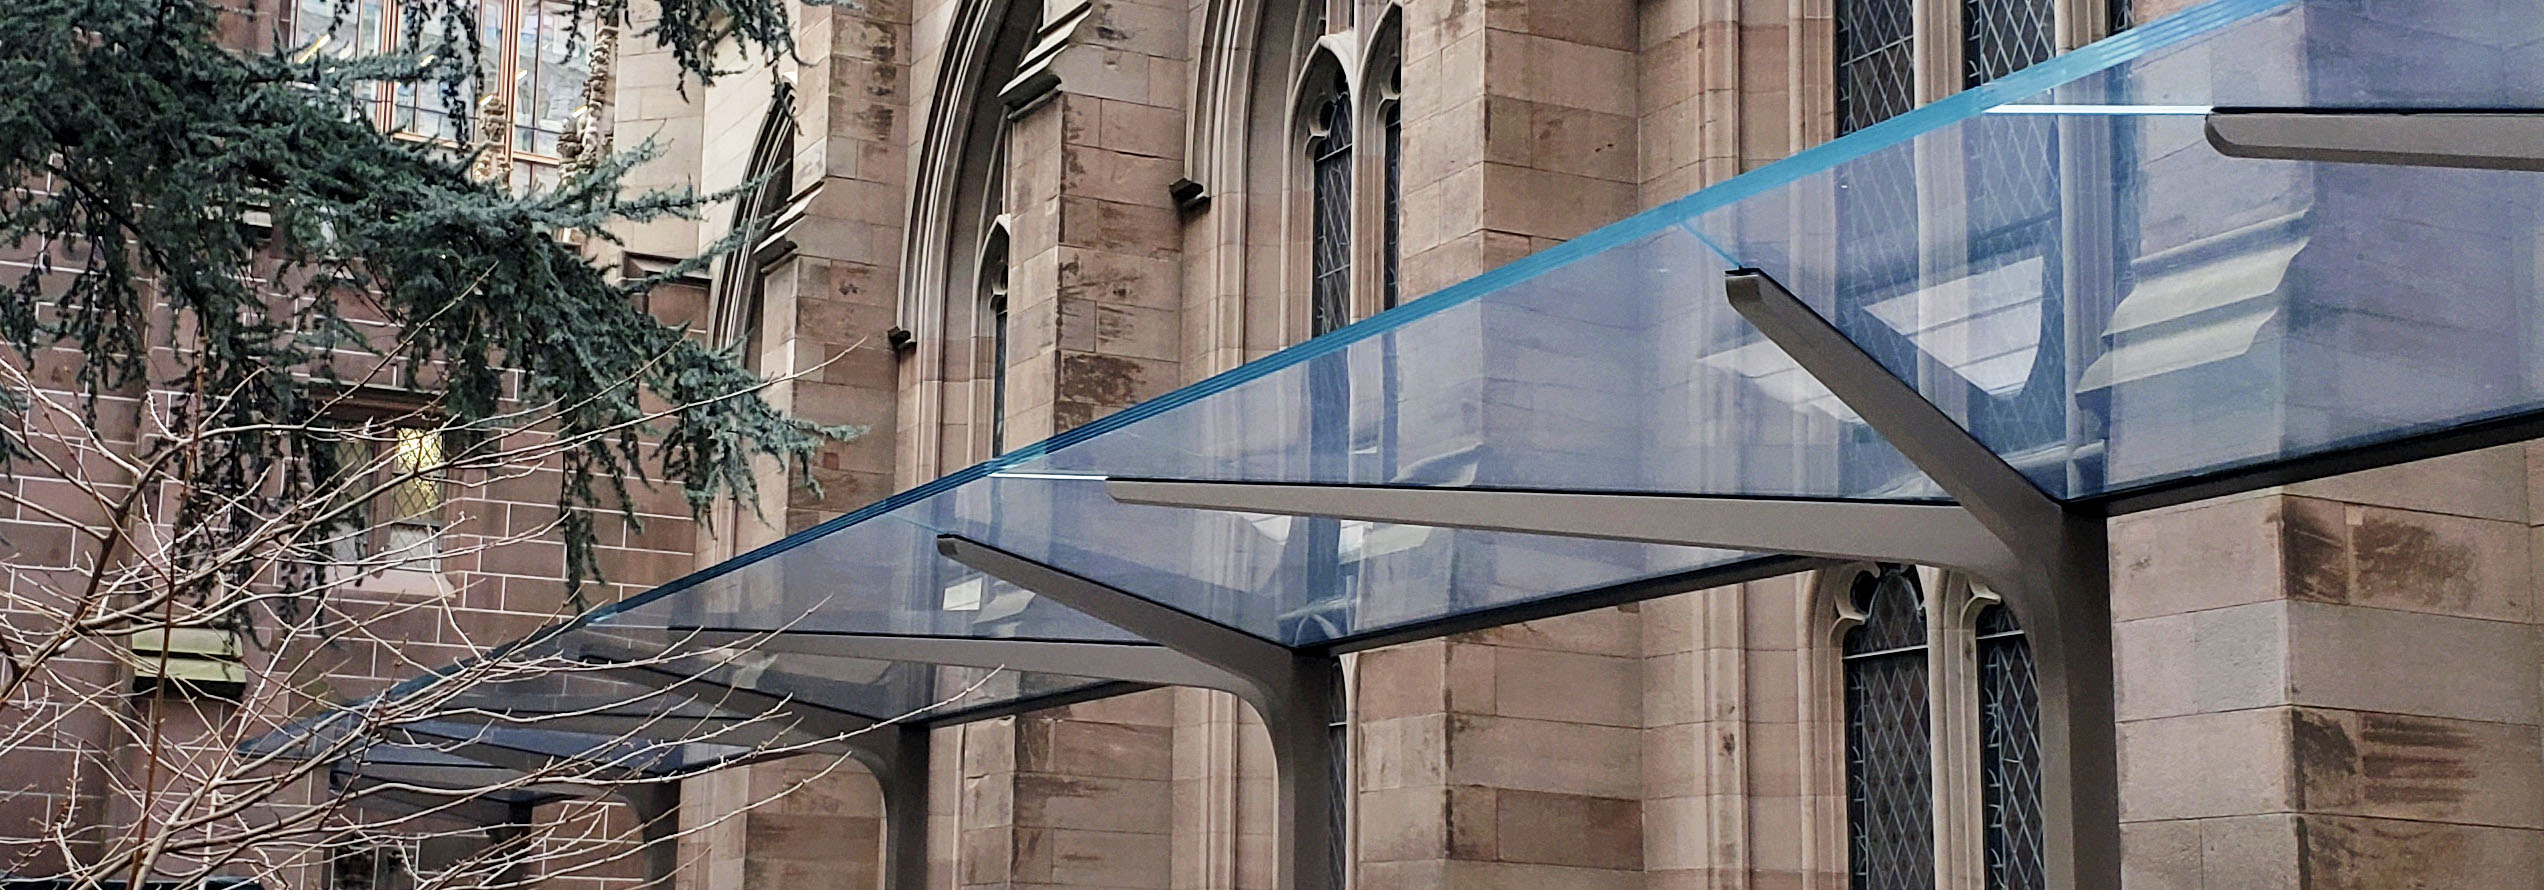 27m langes Glasvordach von seele für die Trinity Church in New York.